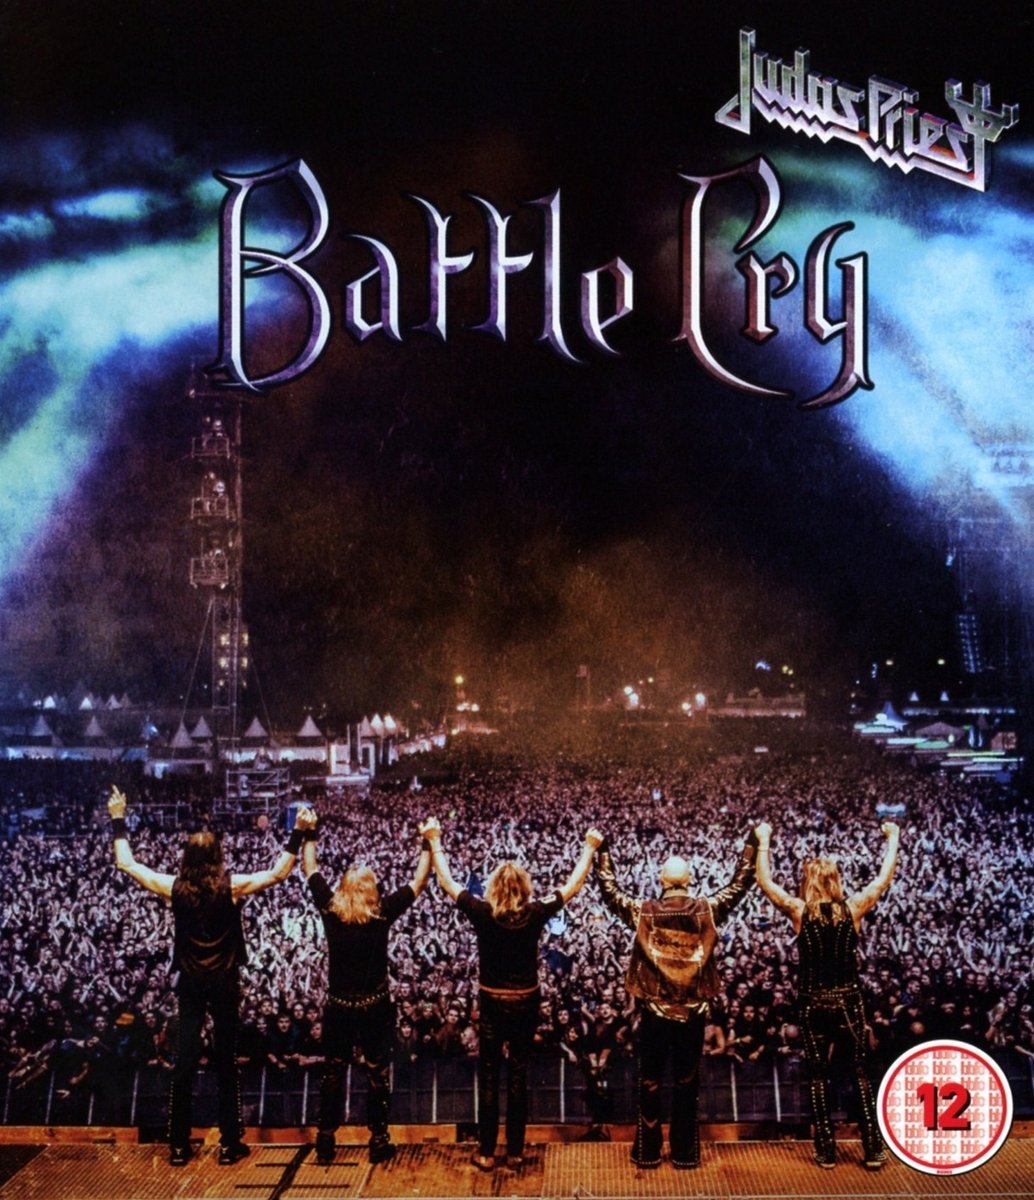 Judas Priest - Battle Cry - Blu-ray | Judas Priest